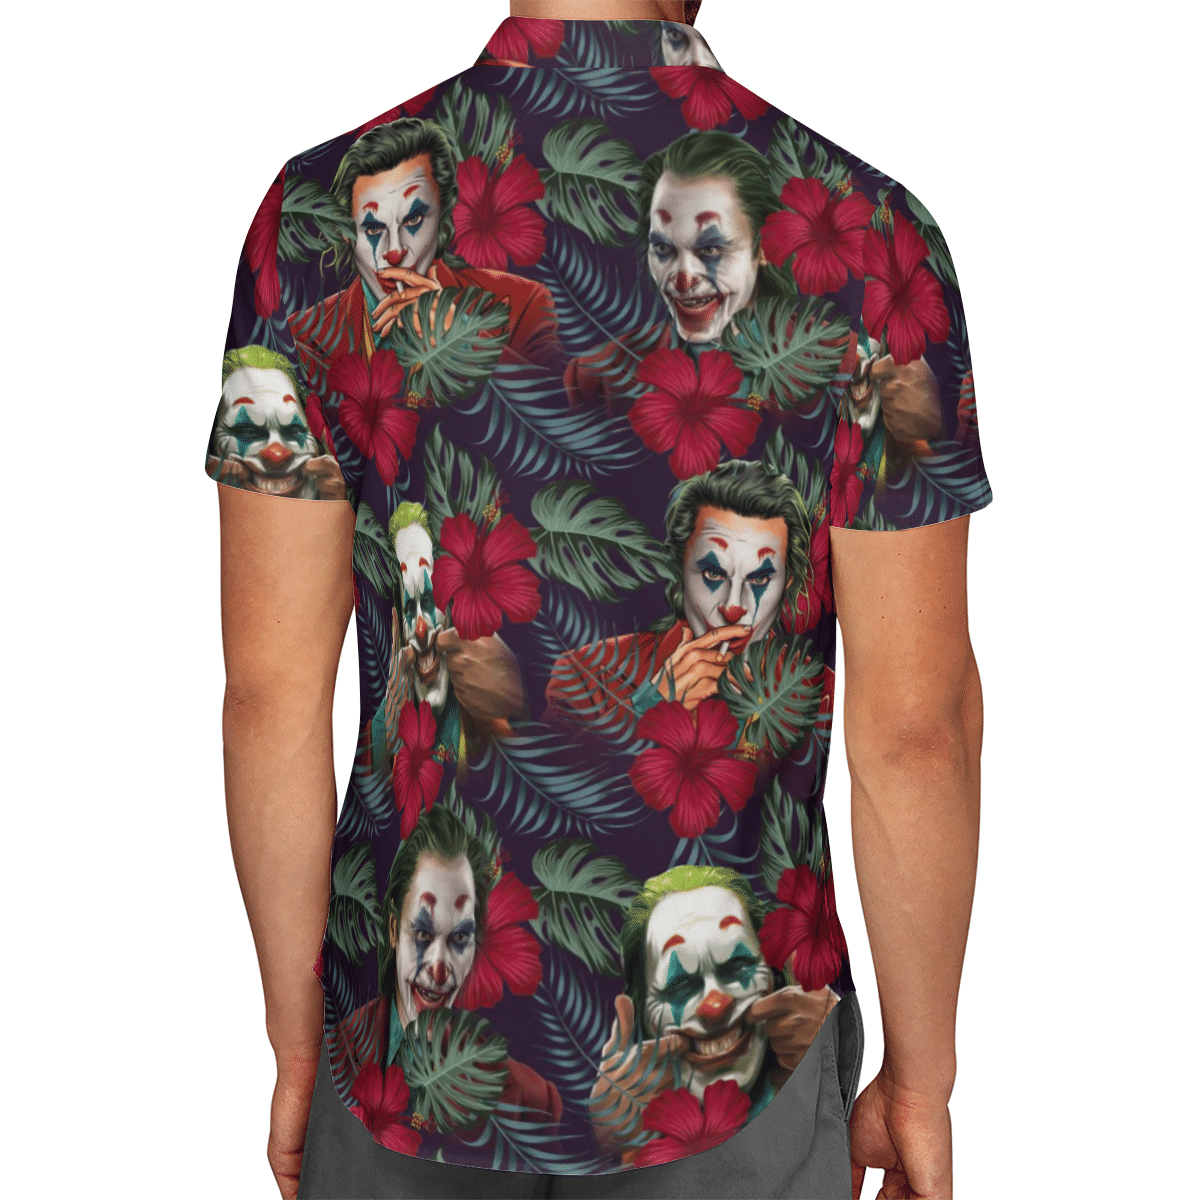 Joker cool Hawaii shirt and short 5